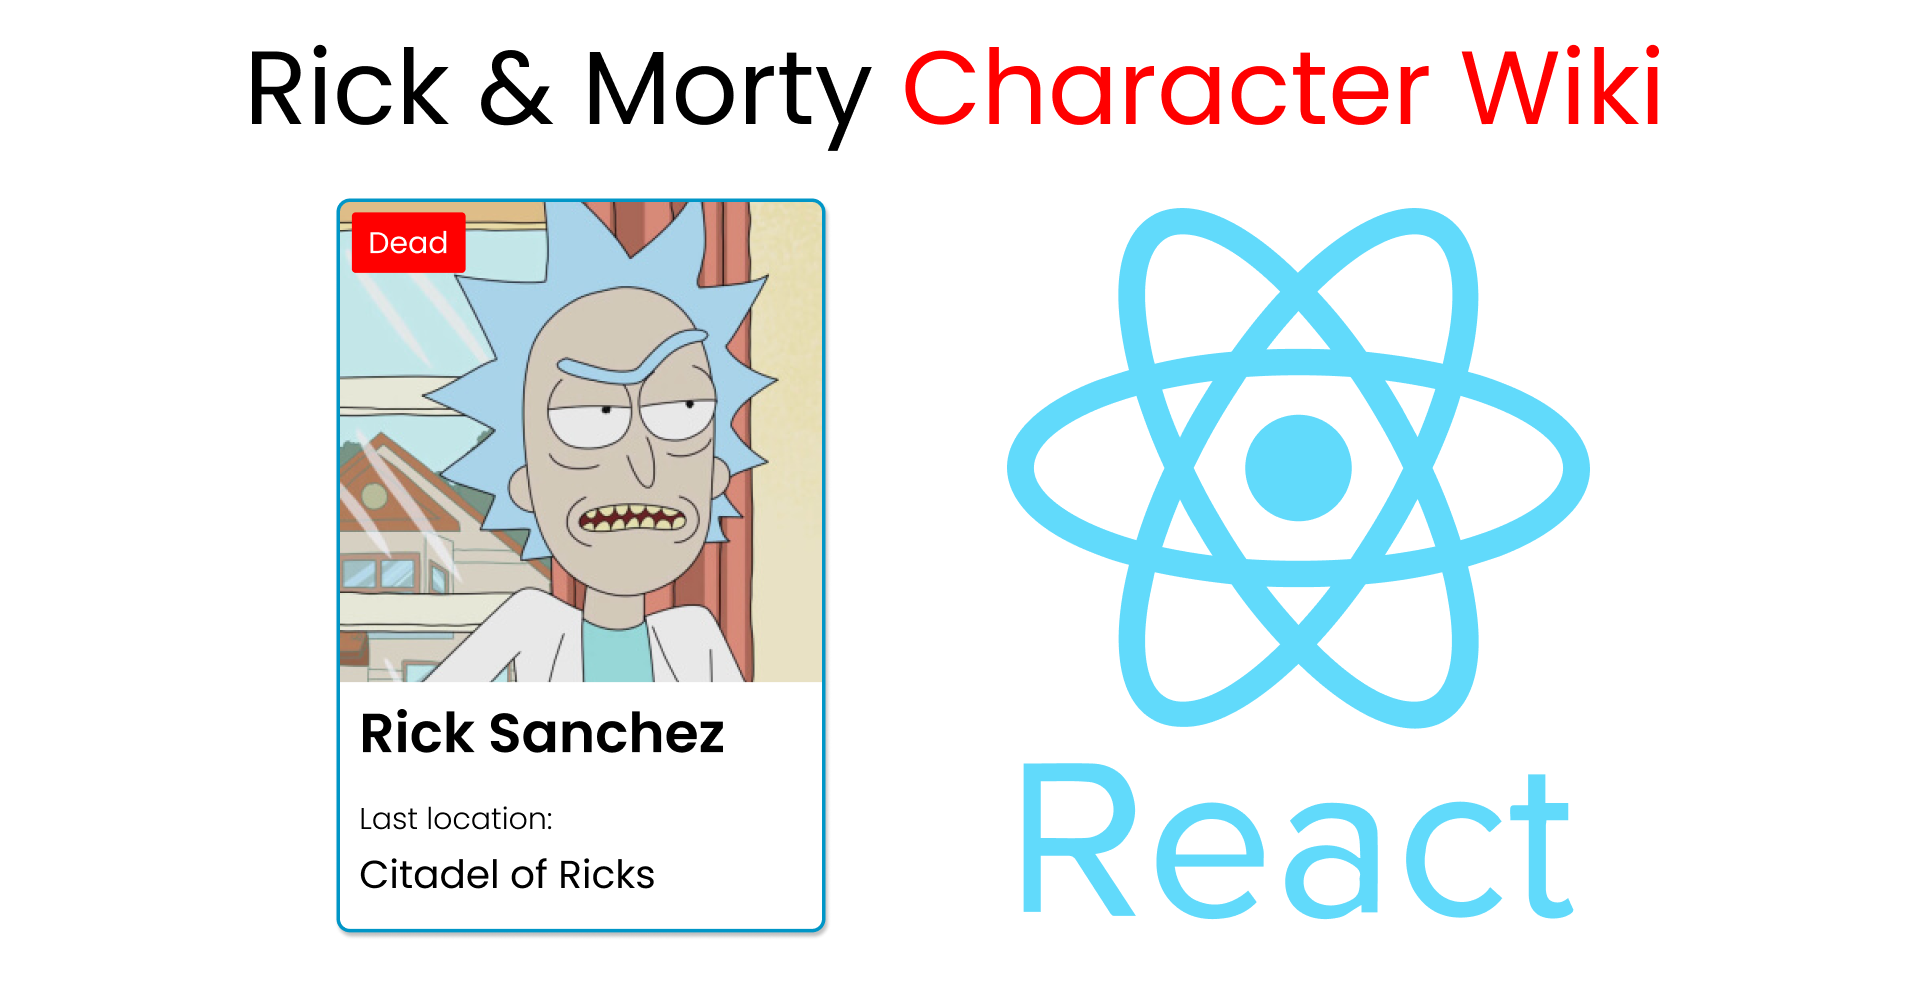 Proyecto ReactJS: Crea una Wiki de personajes de Rick y Morty